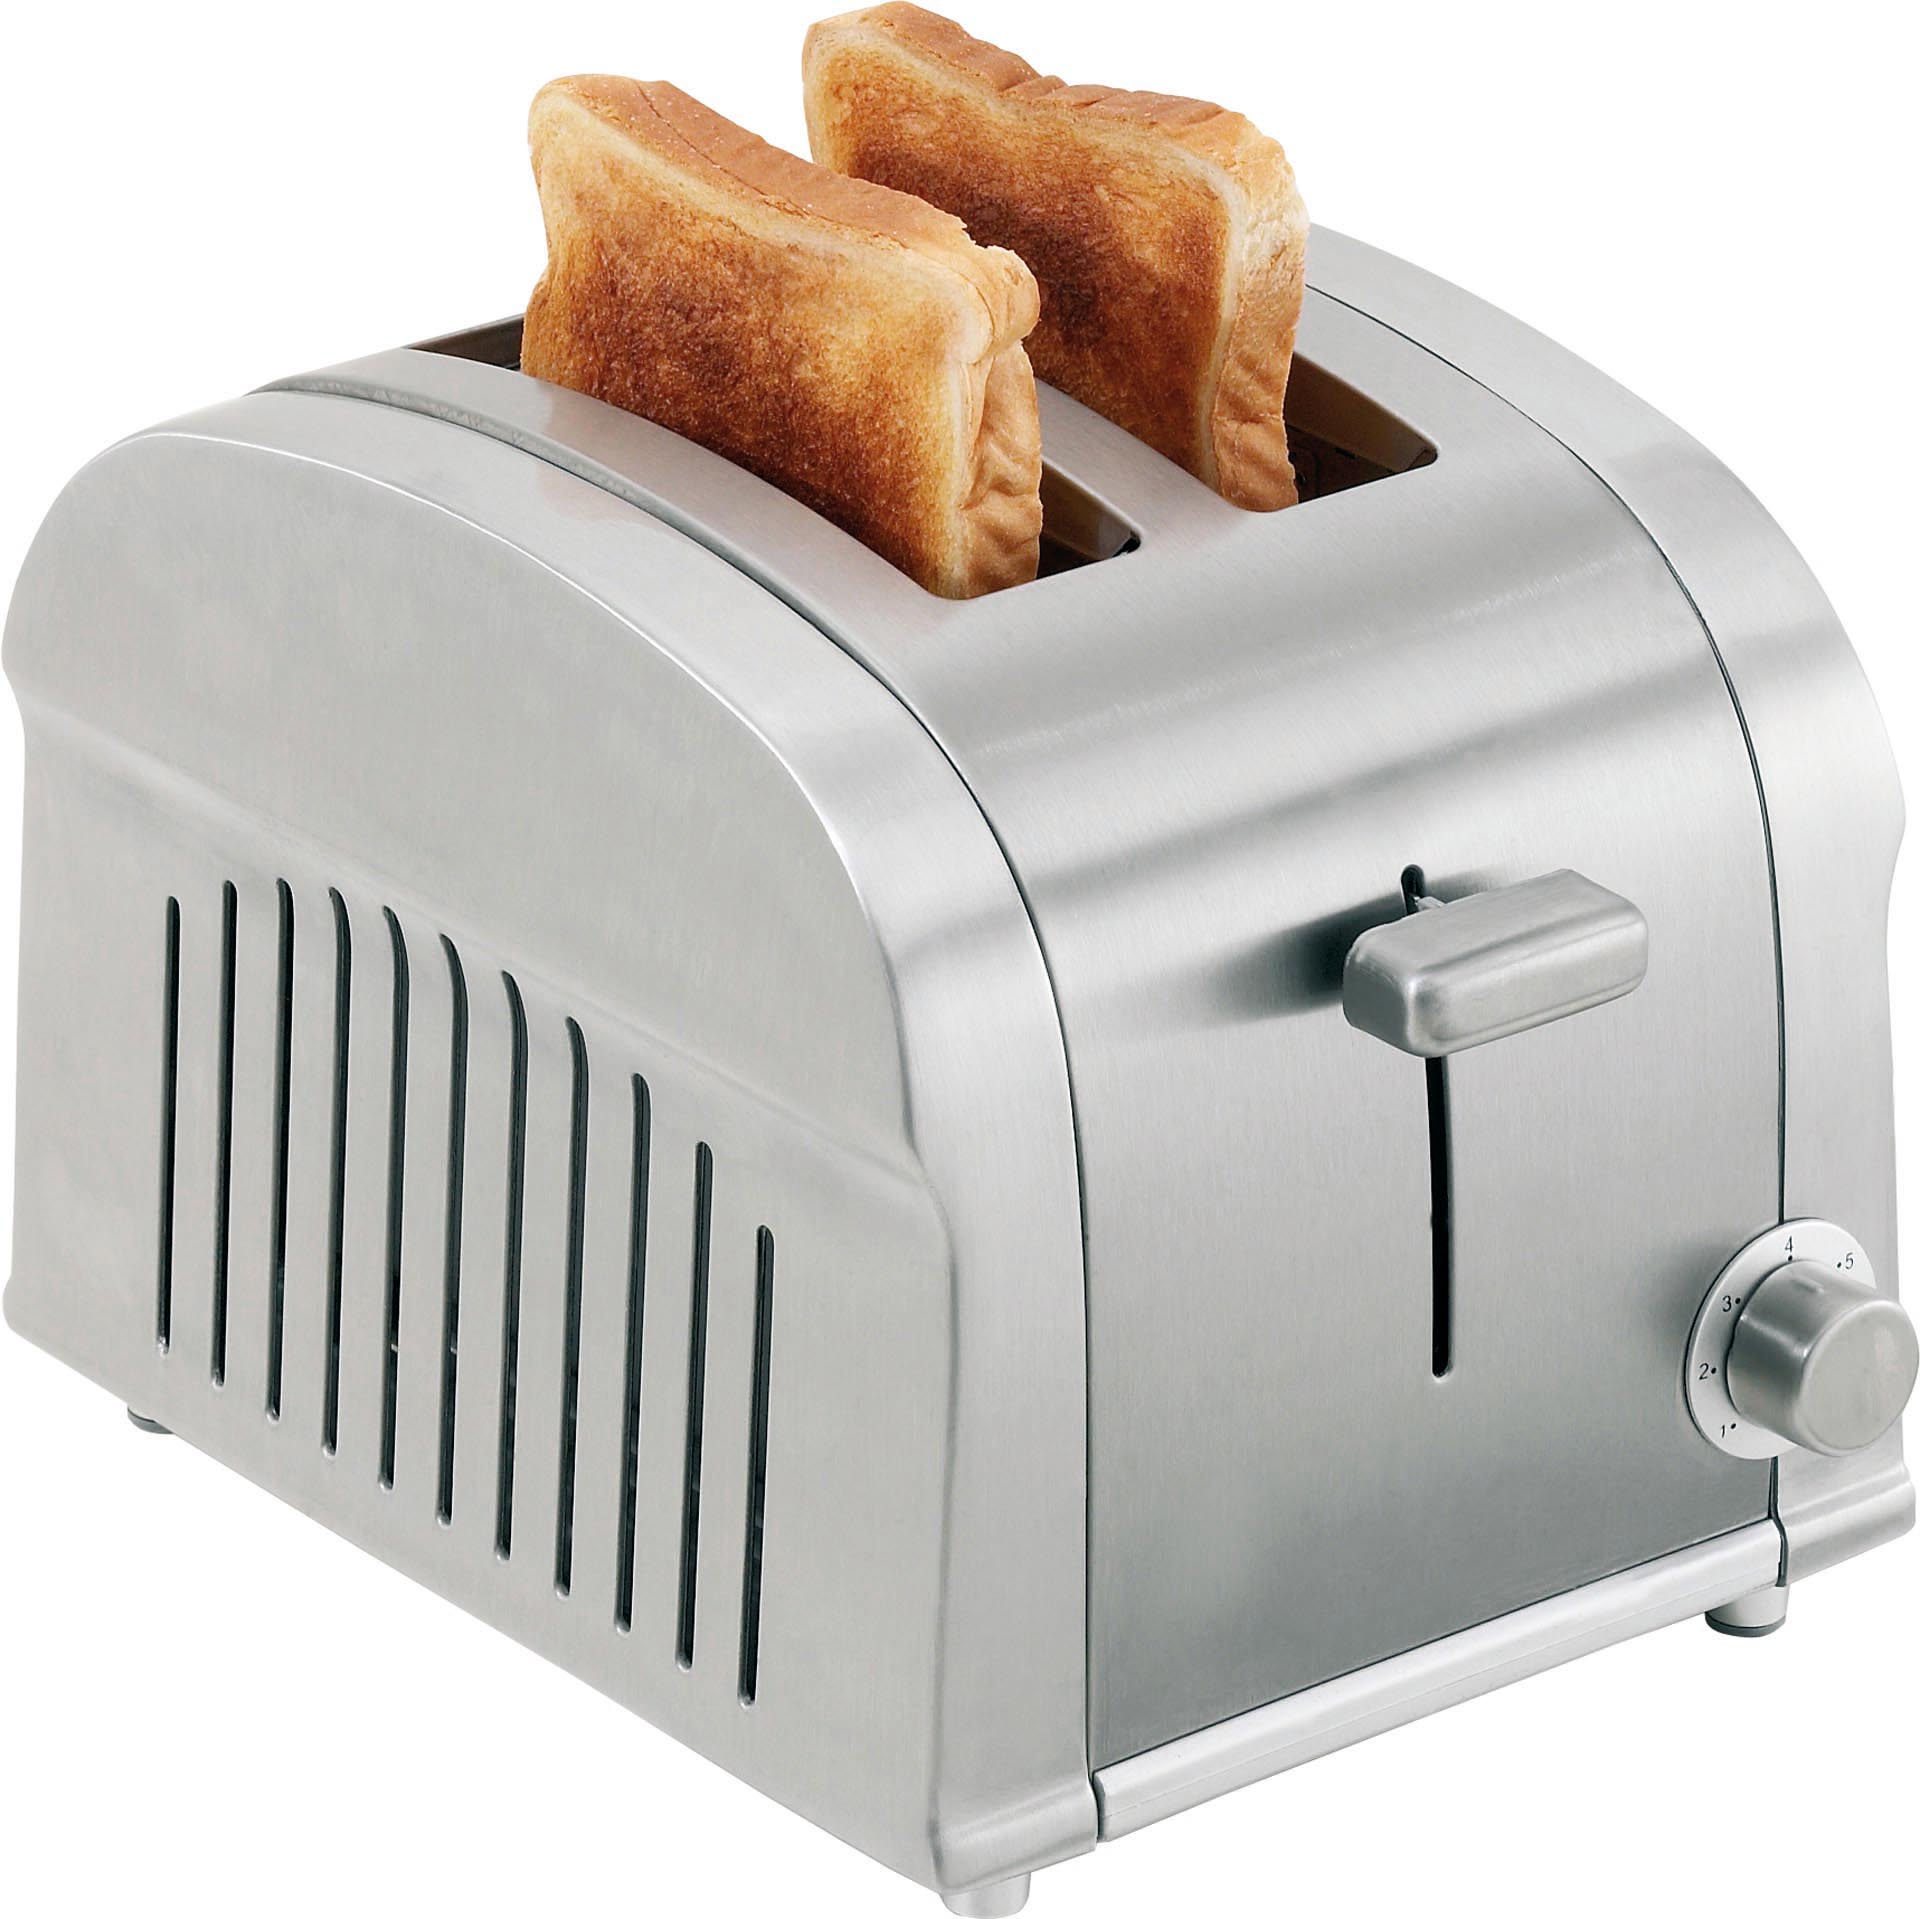 2 Scheiben Toaster S.438